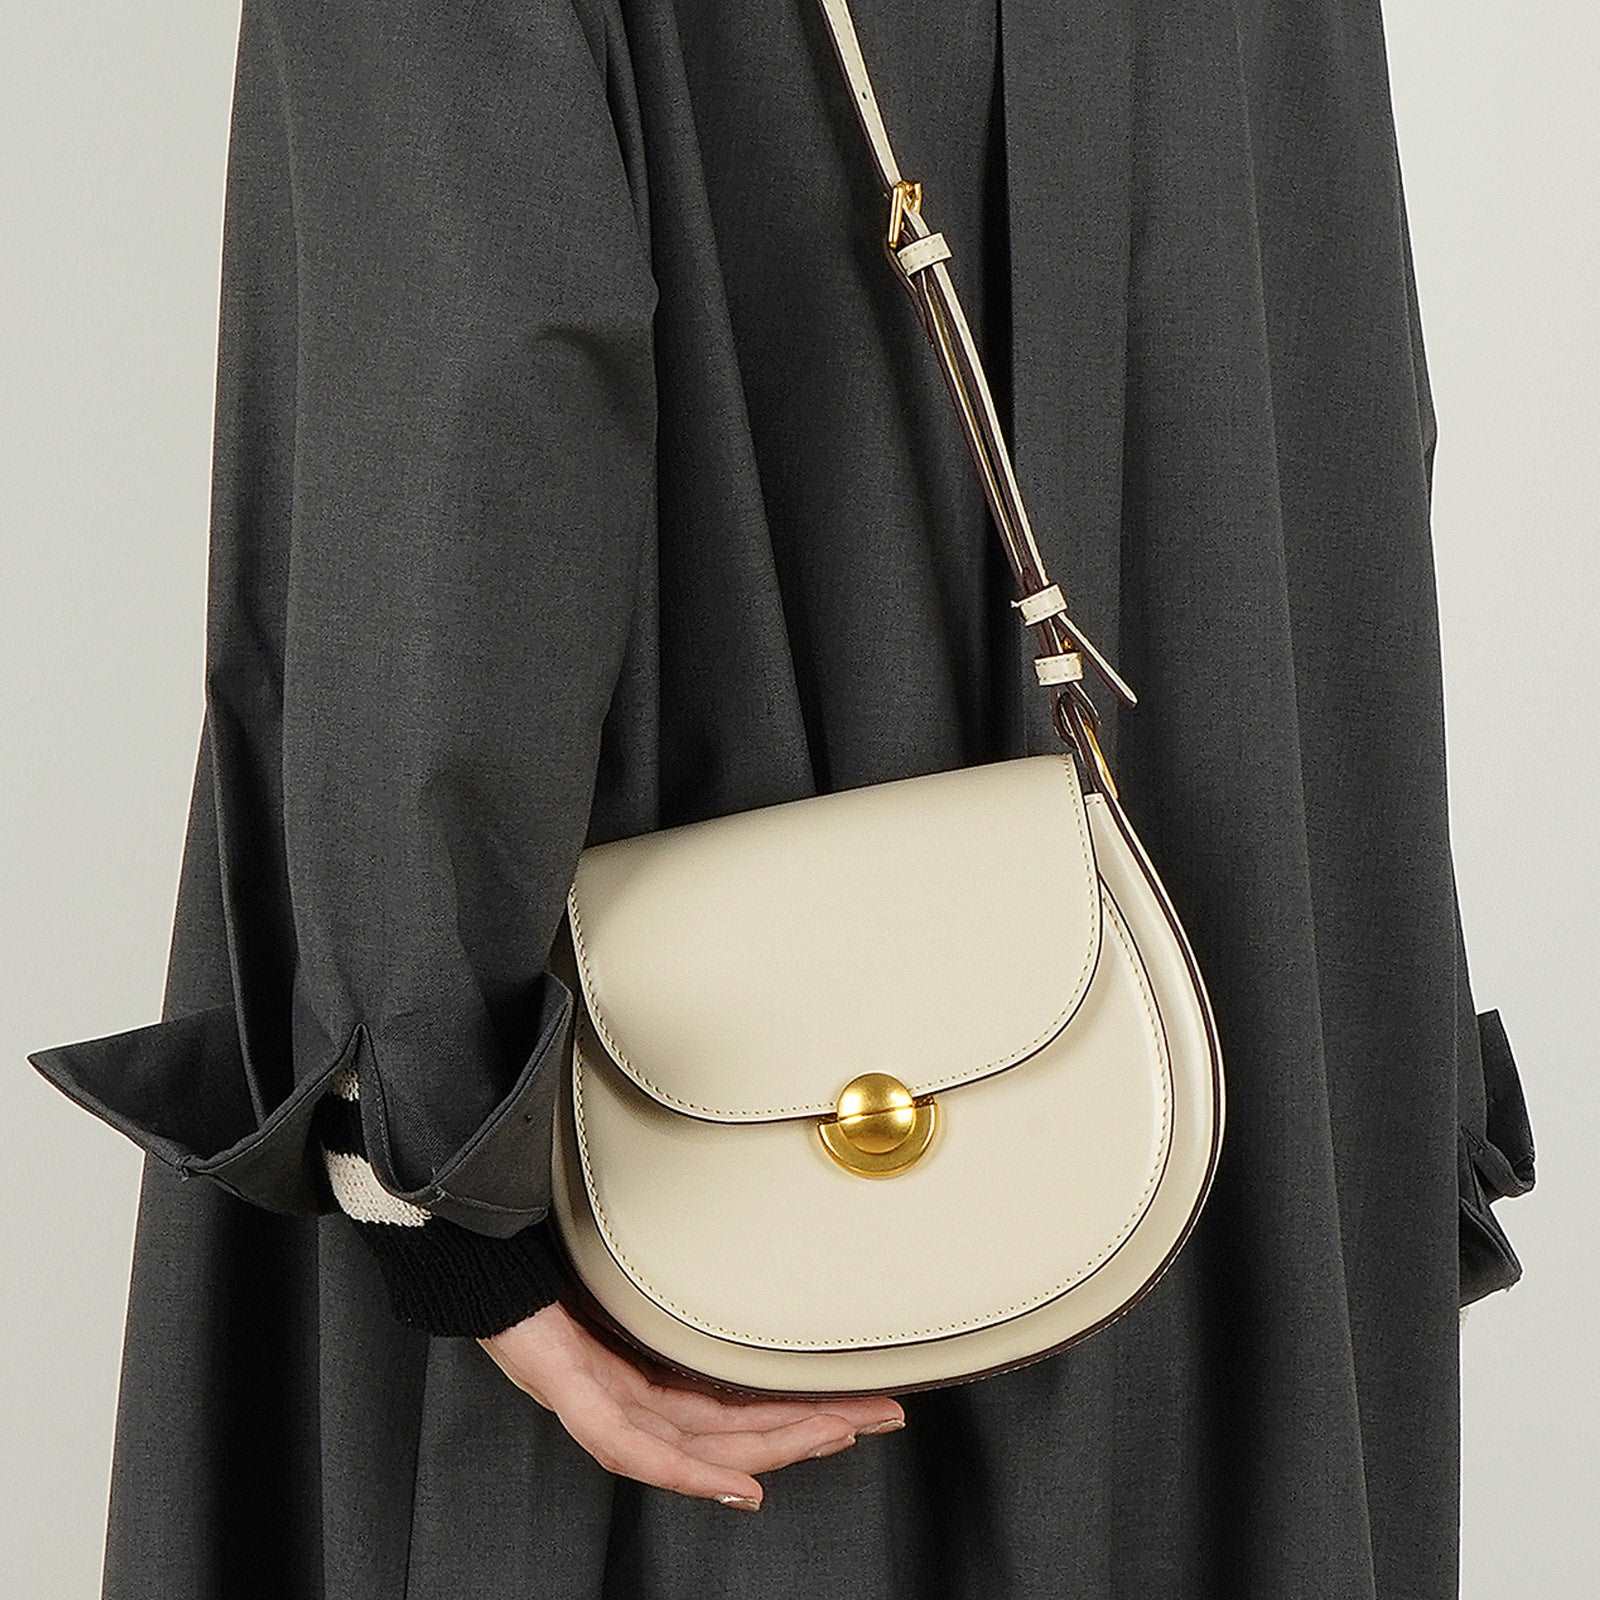 Women's Stylish Genuine Leather Horsebag with Exquisite Craftsmanship woyaza